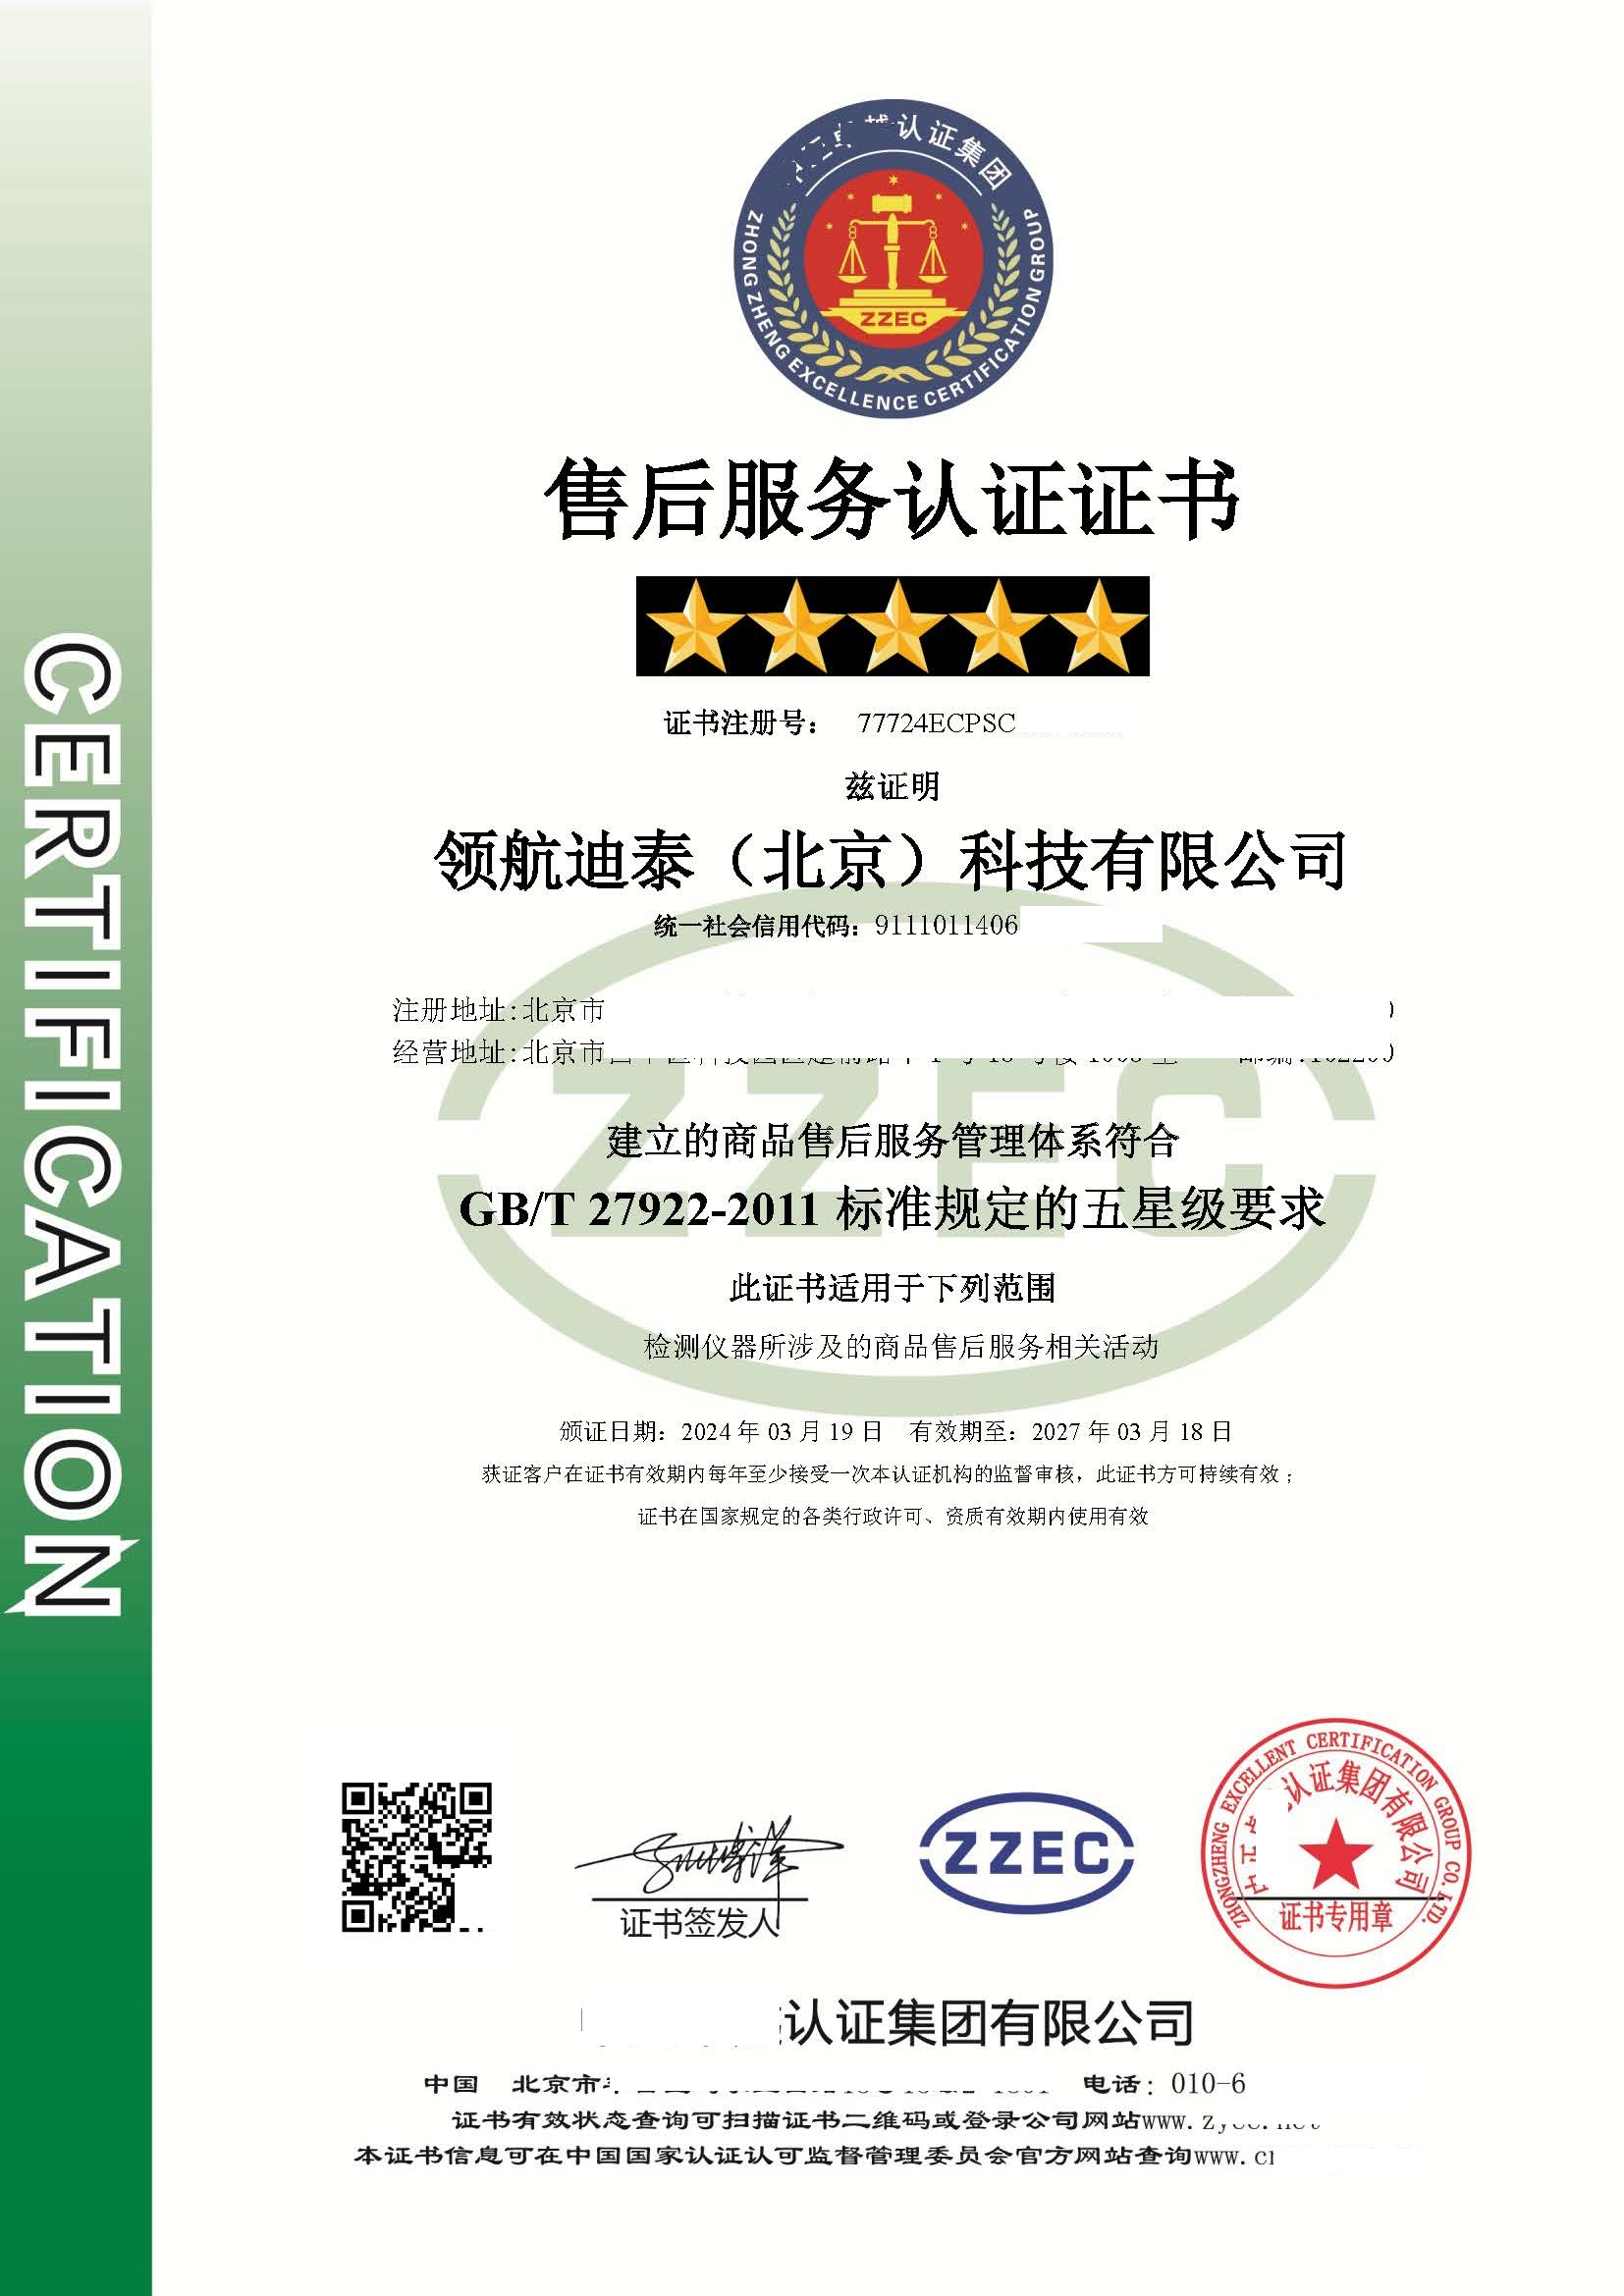 恭喜  ****（北京）科技有限公司  获得五星售后服务体系证书